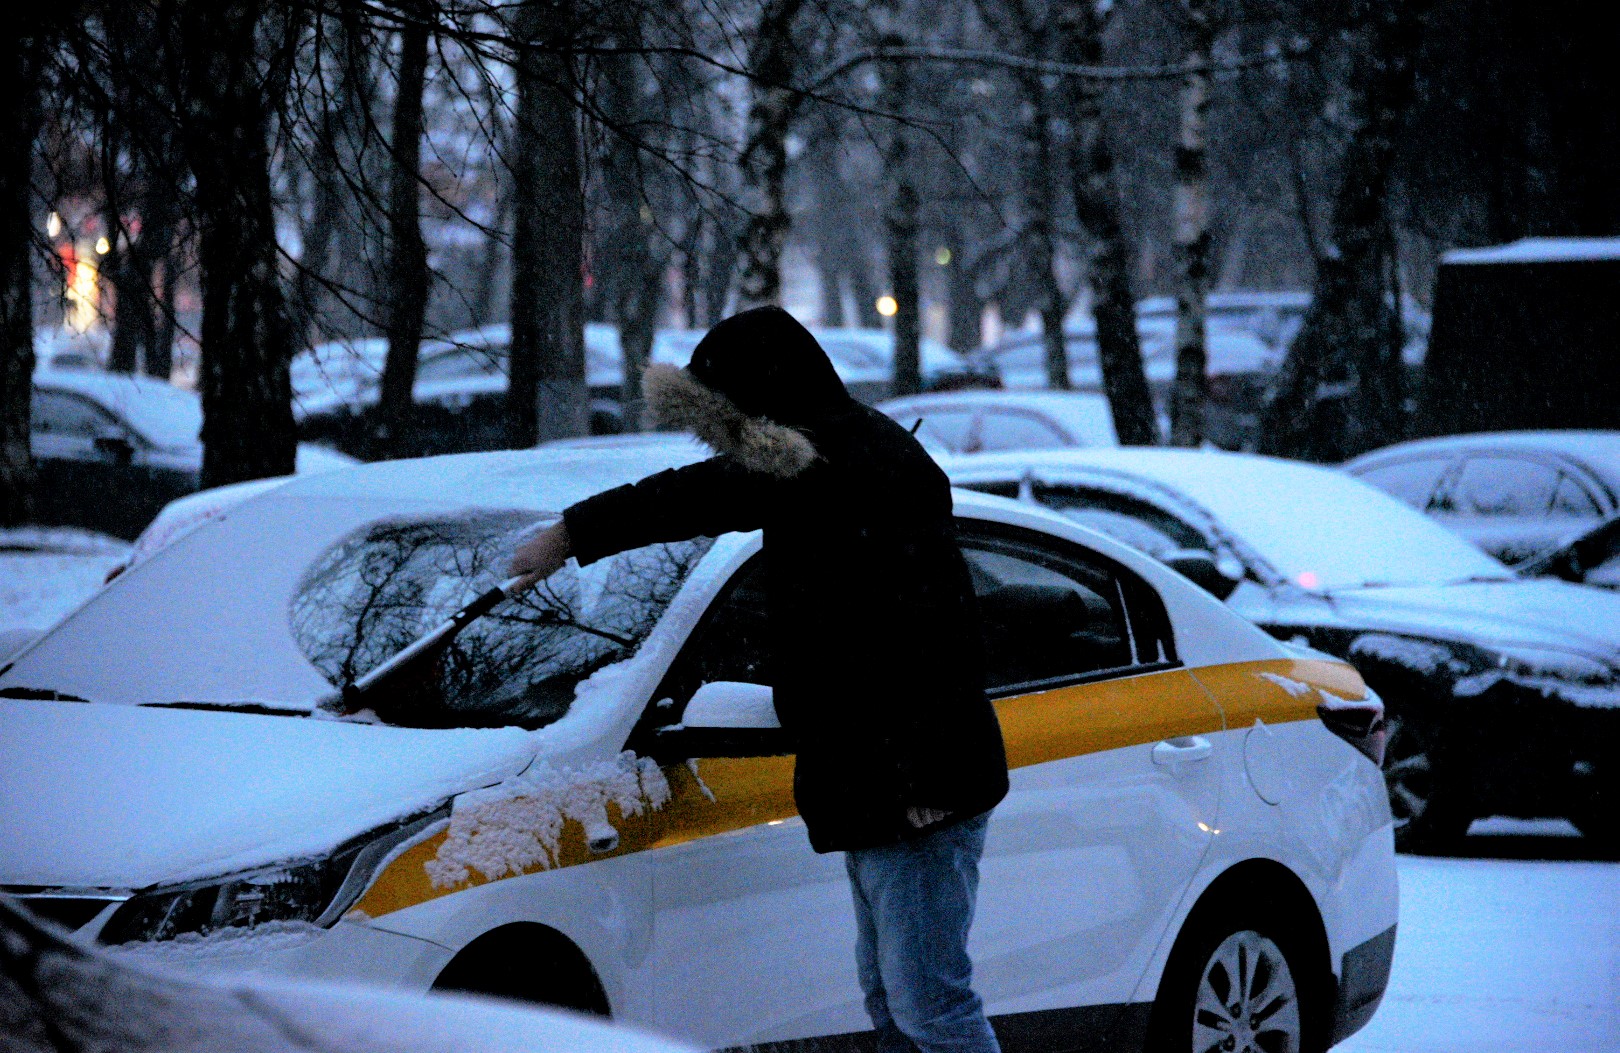 Метеорологи зарегистрировали самую холодную ночь на 22 декабря в Москве за последние 54 года